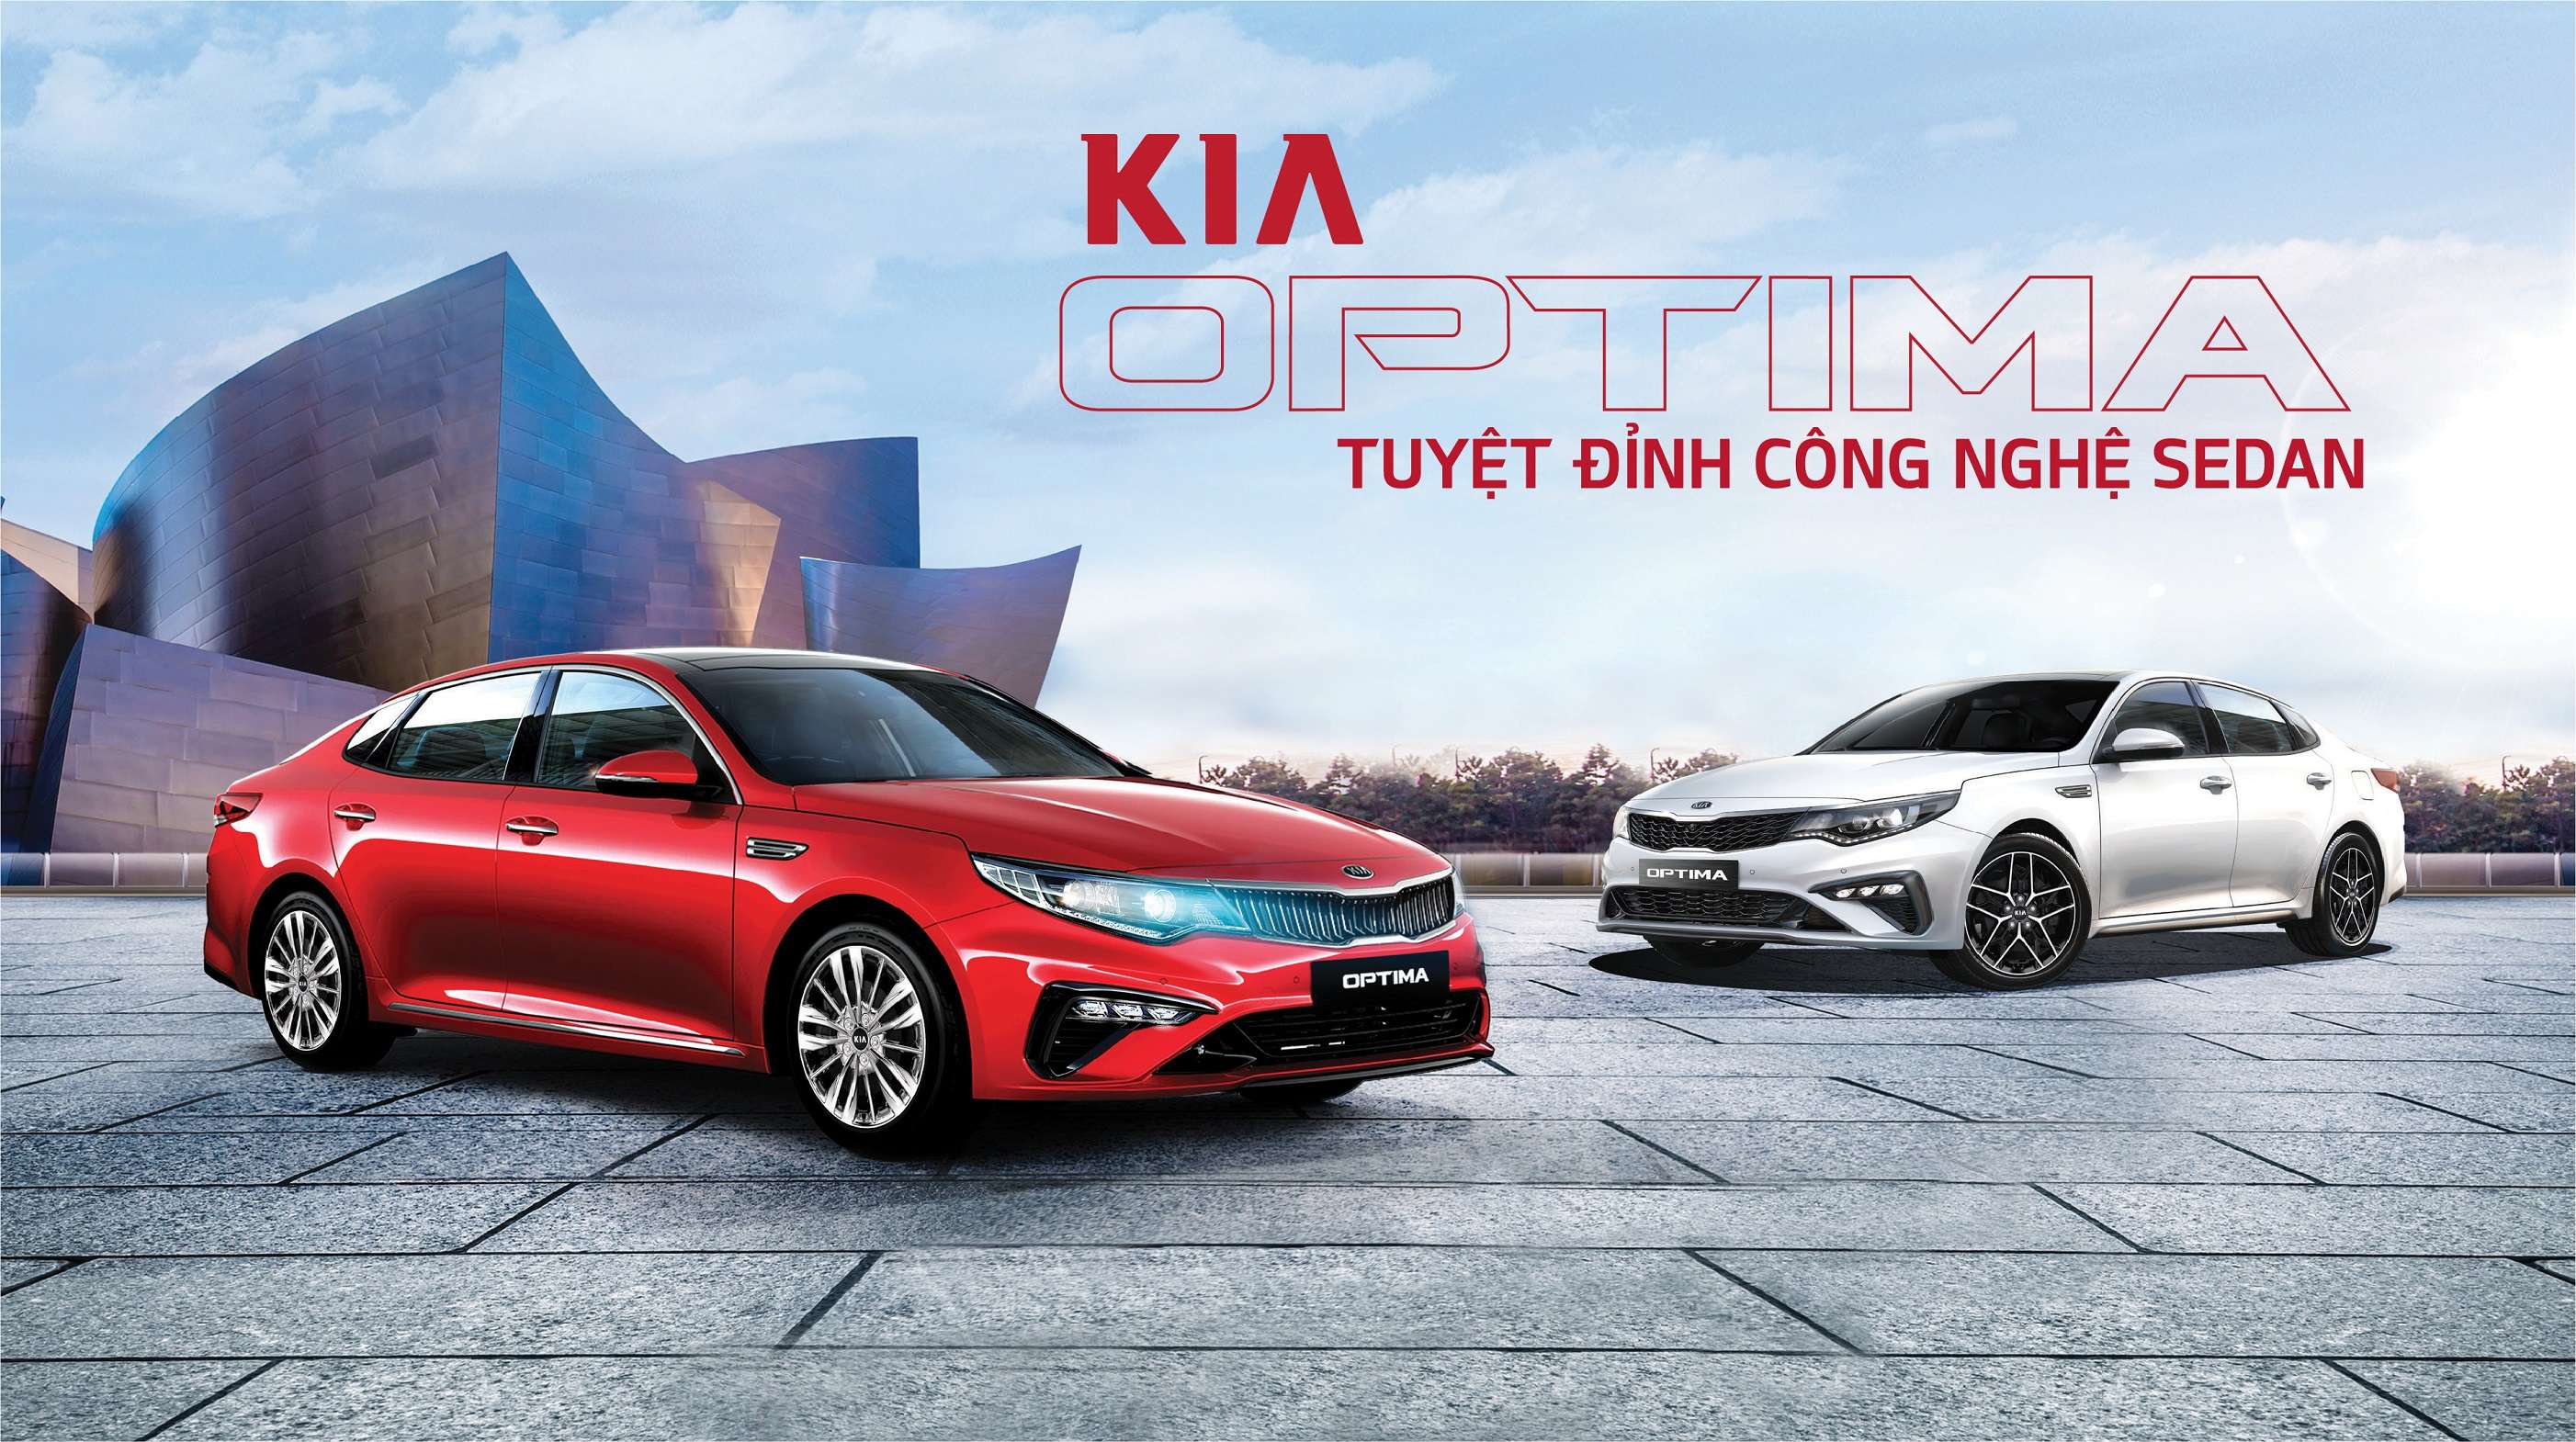 Kia Optima – Tuyệt Đỉnh Công Nghệ Sedan | Kia Viet Nam